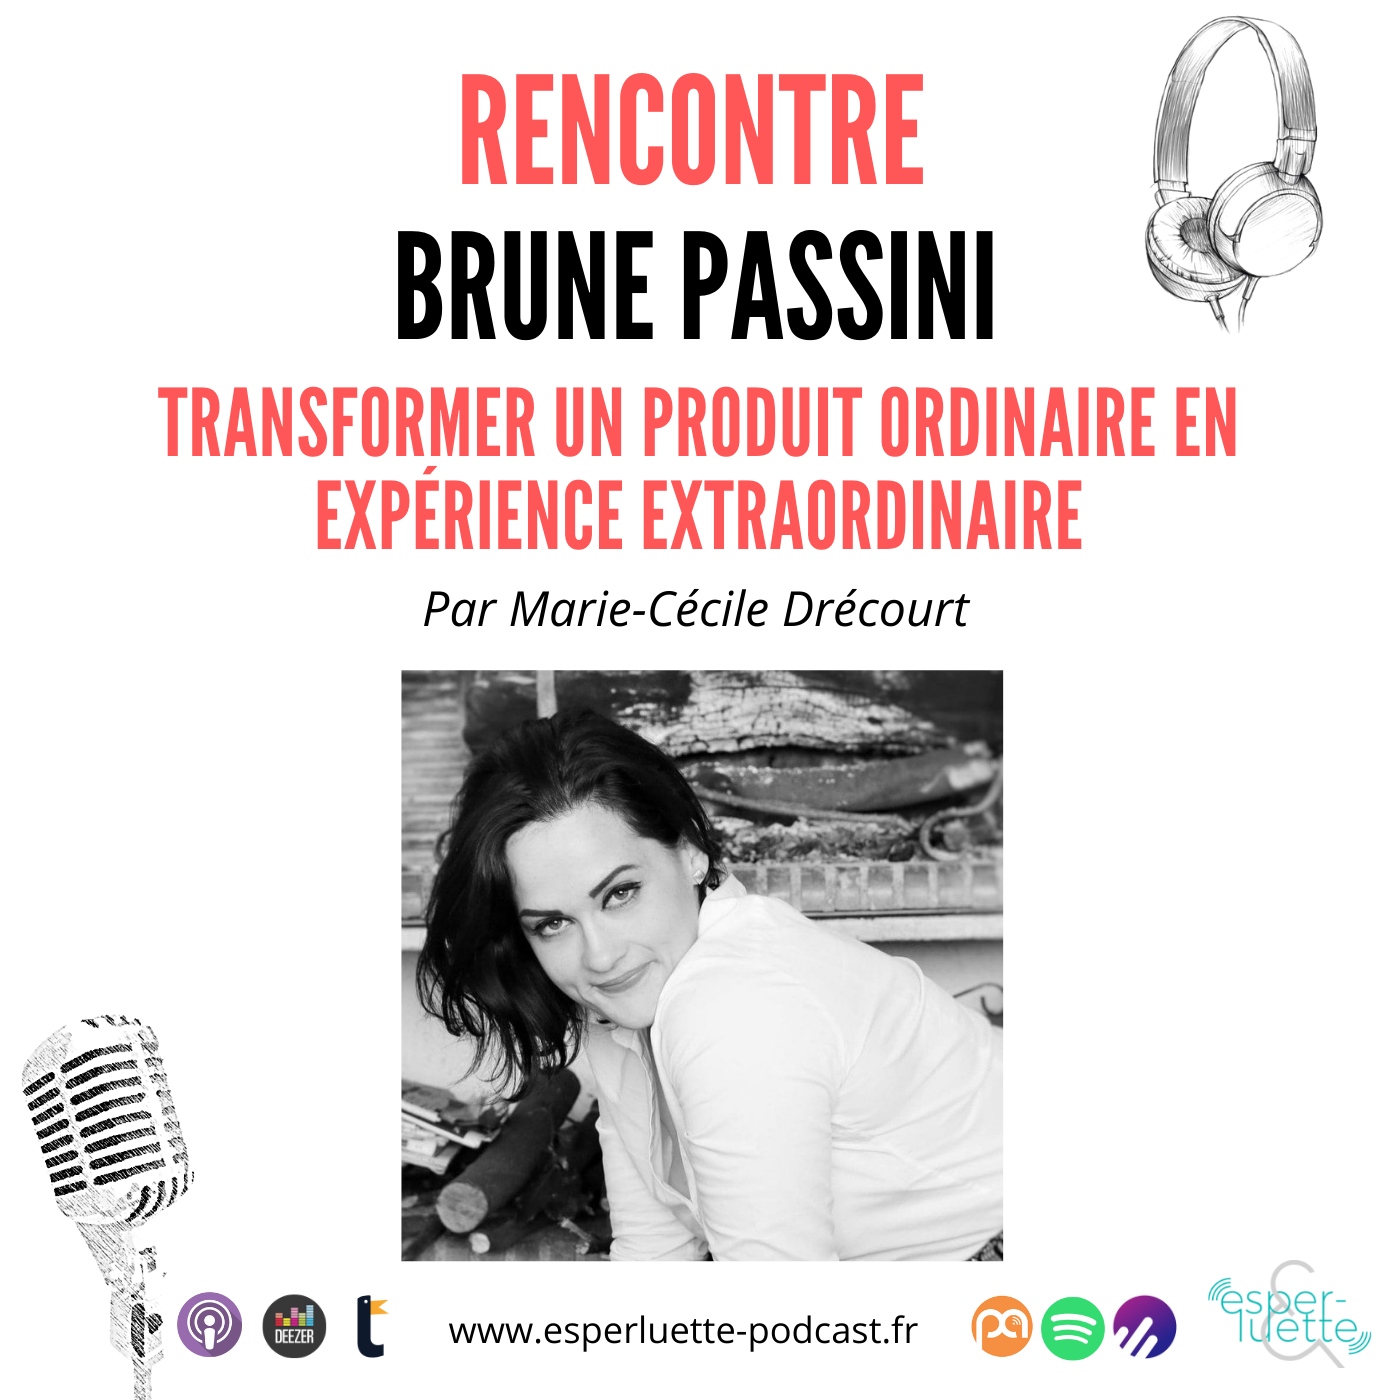 Brune Passini, transformer un produit ordinaire en expérience extraordinaire